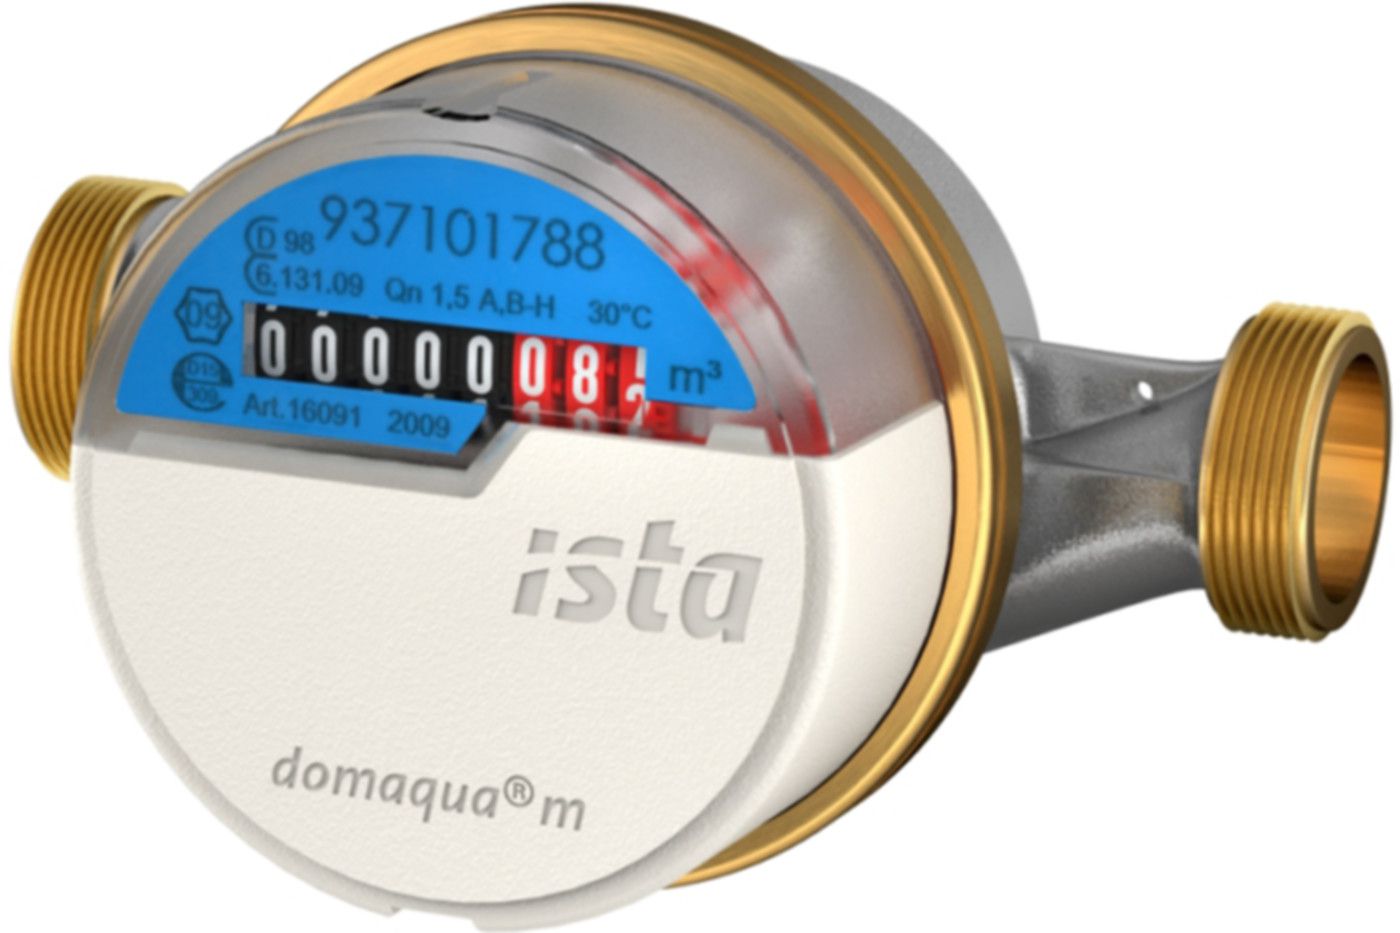 Aufputzzähler Domaqua m DN 20 3/4" G 1" - 130 mm kalt 2.5 m3/h  16093 - ISTA - Wärme- / Wasserzähler